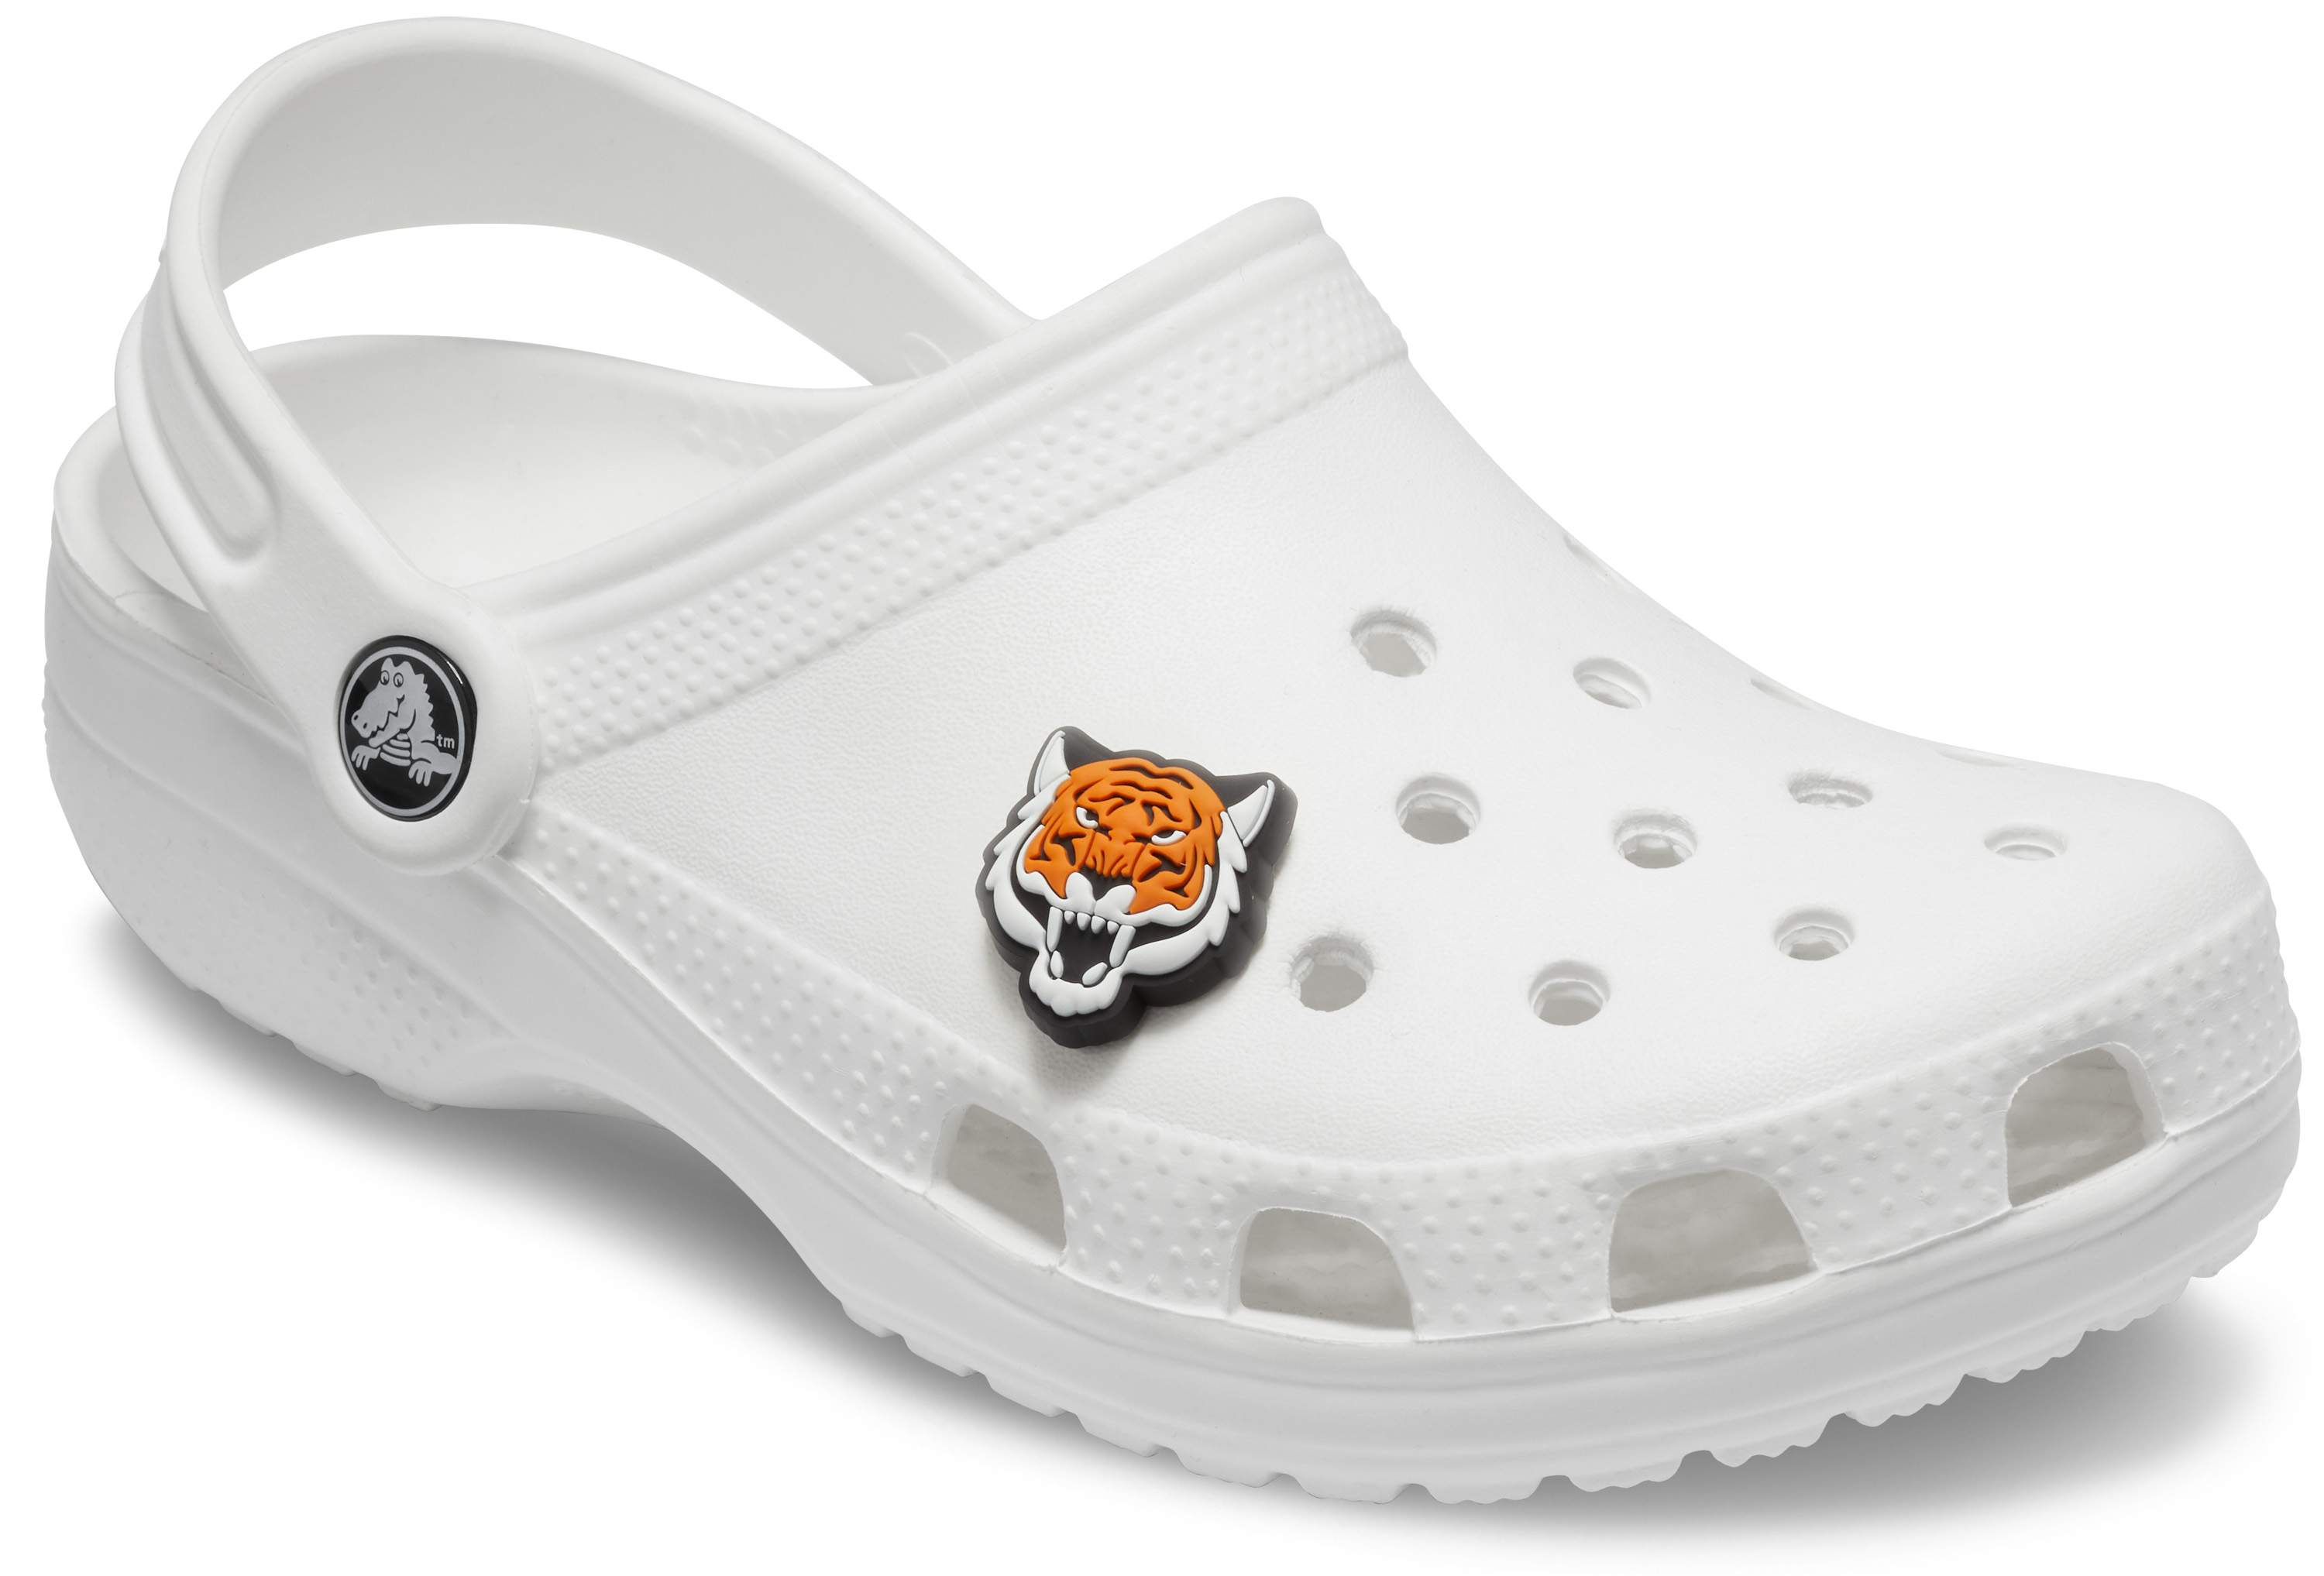 Tiger Mascot Jibbitz Shoe Charm - Crocs